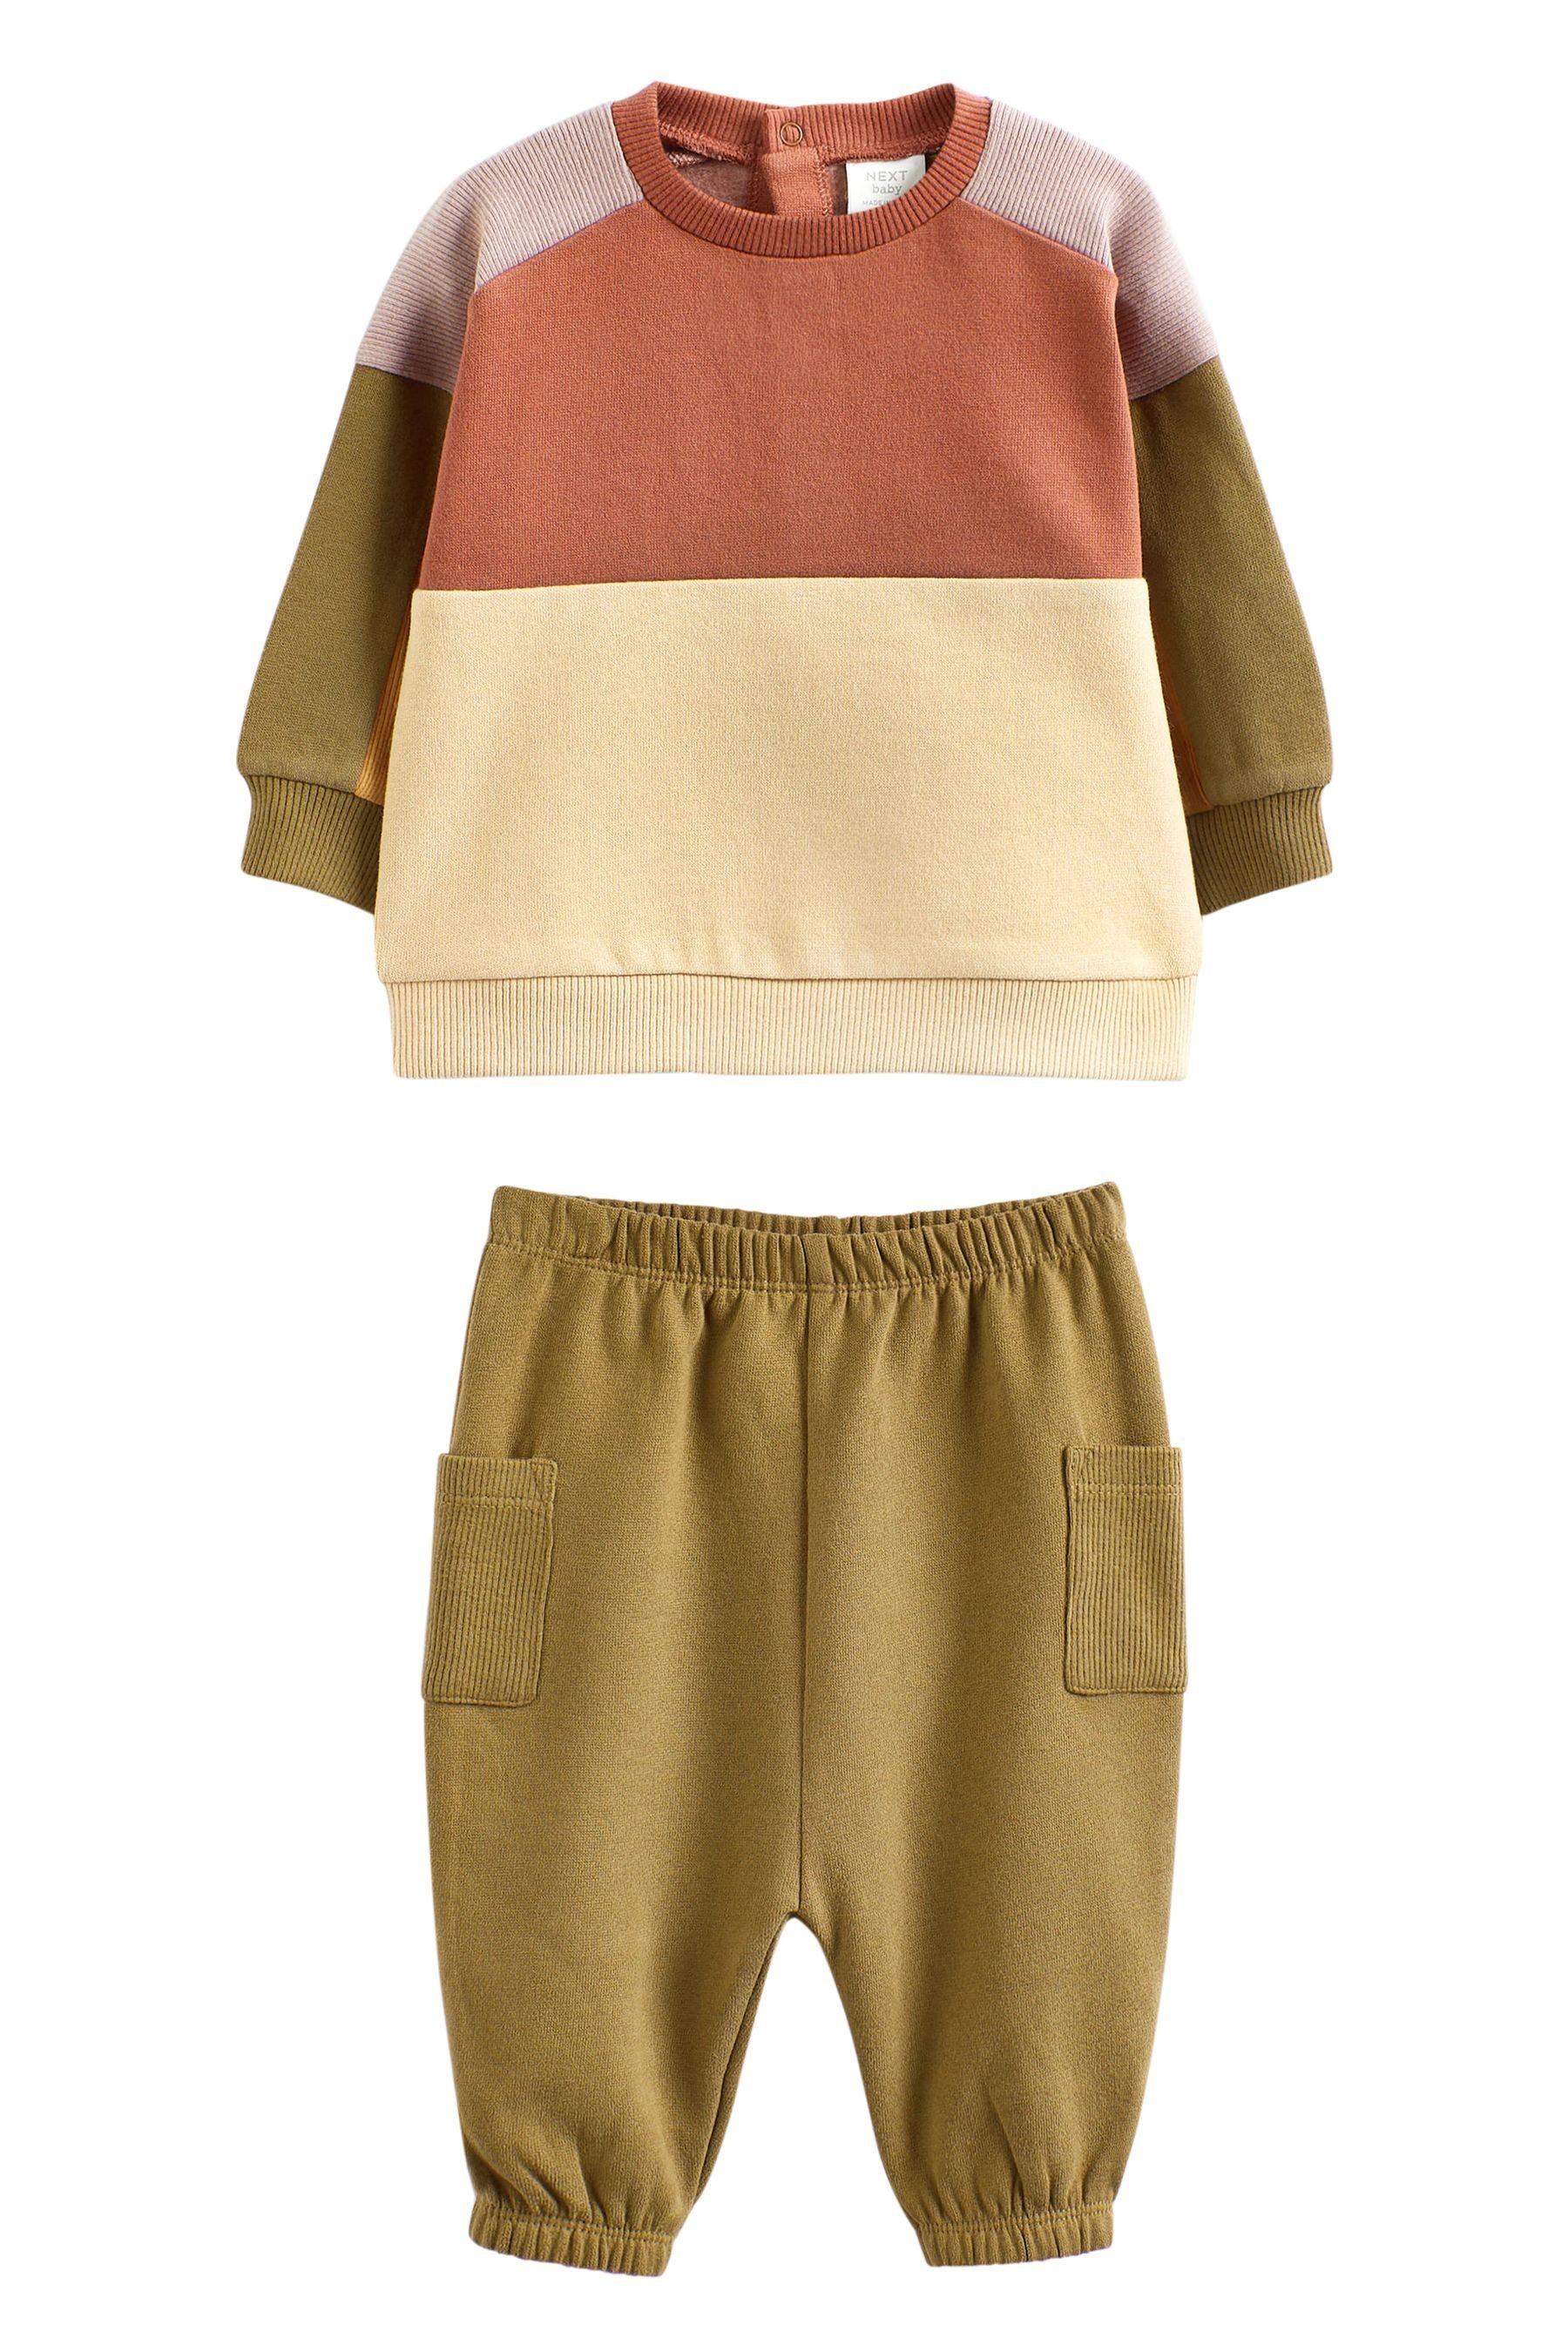 Next Sweatanzug 2-teiliges Baby-Set mit Sweatshirt und Jogginghose (2-tlg) Green/Cream Colourblock